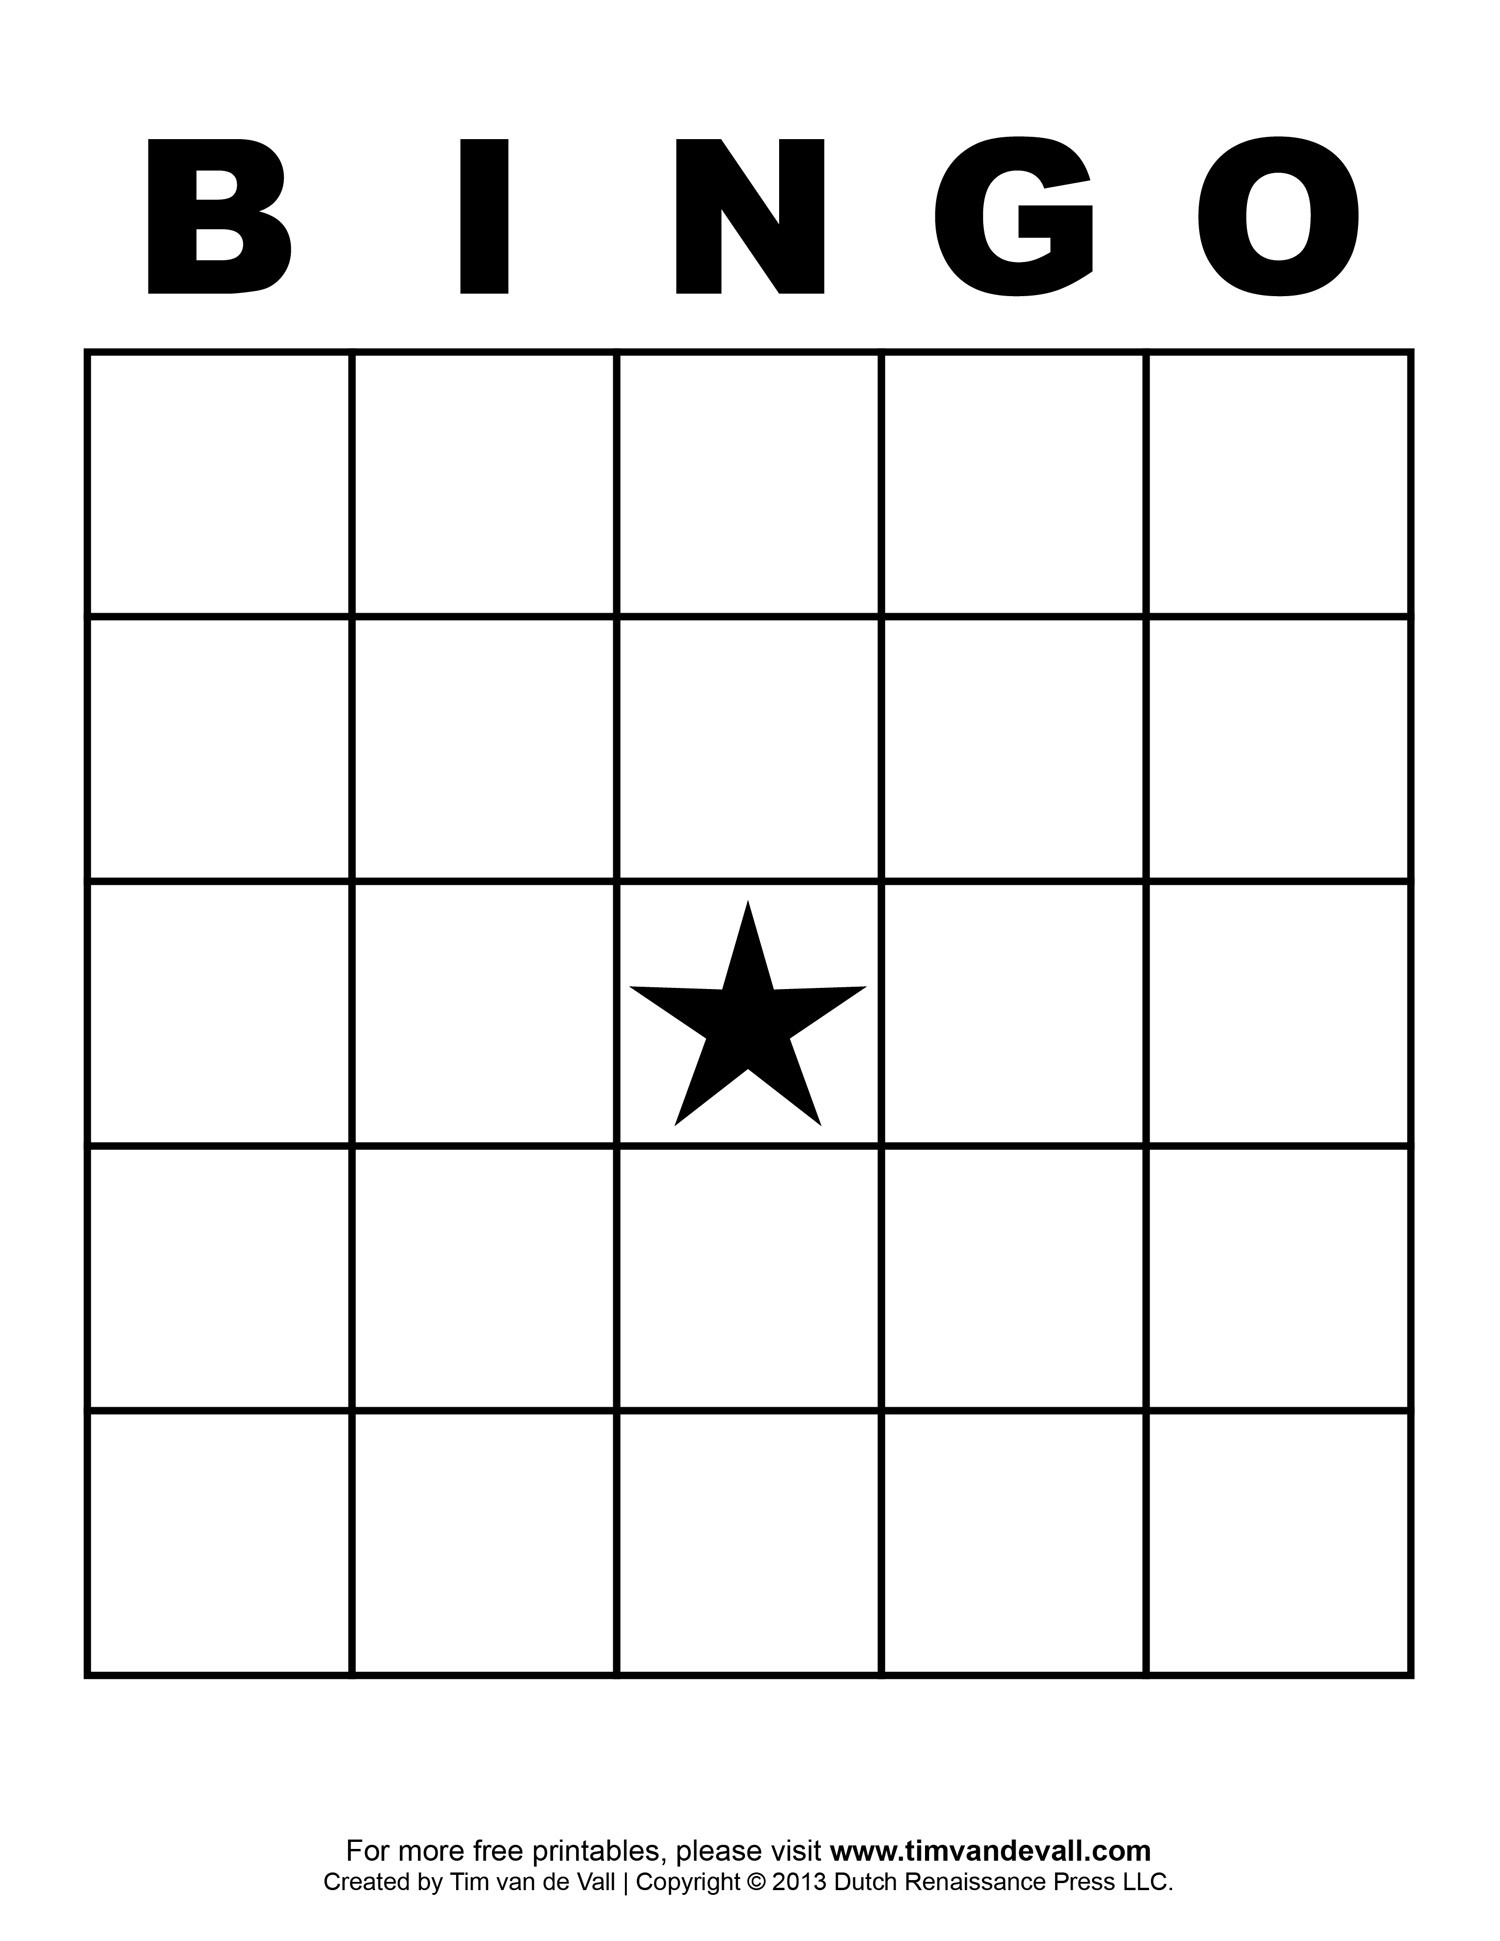 bingo-board-5-5-dasbesteonlinecasino